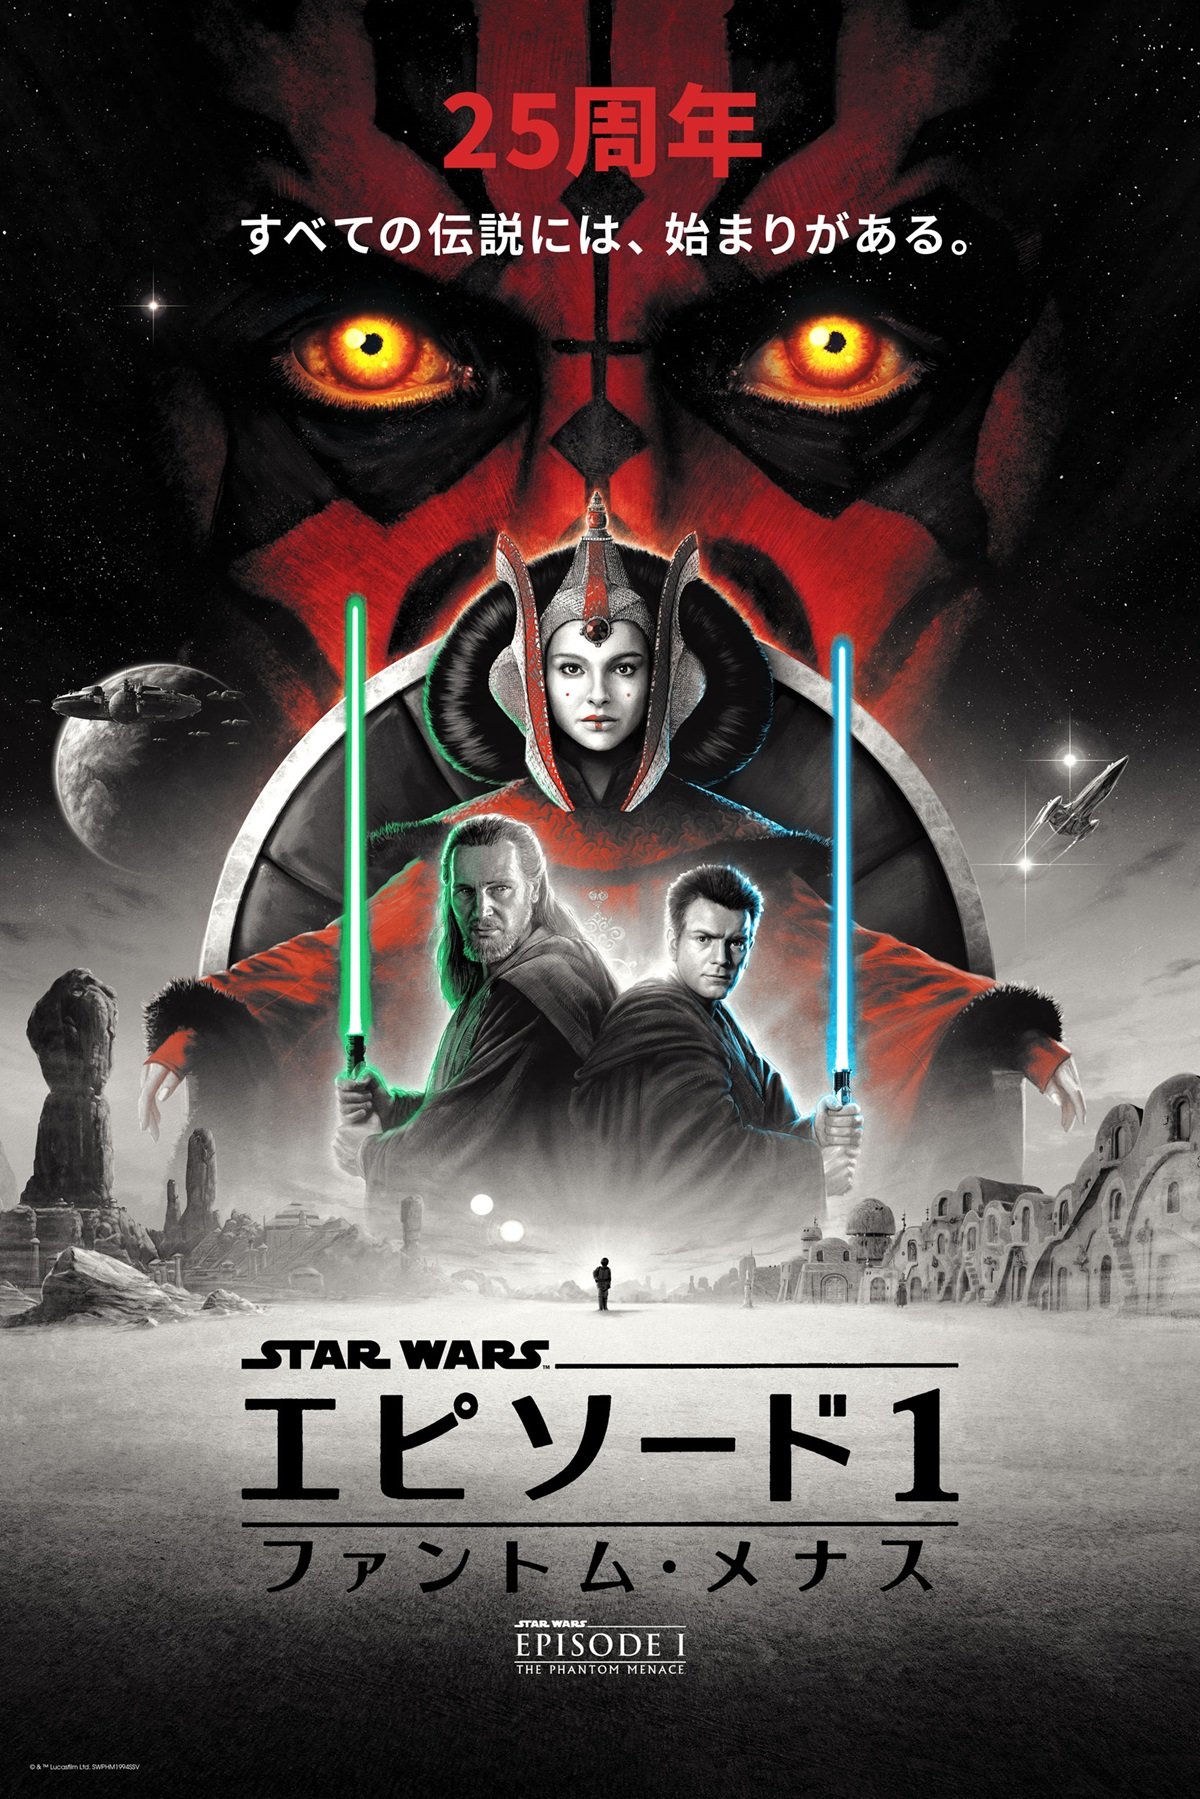 Matt Ferguson's Star Wars: Episode I - The Phantom Menace 25th anniversary poster, variant Japanese edition. 